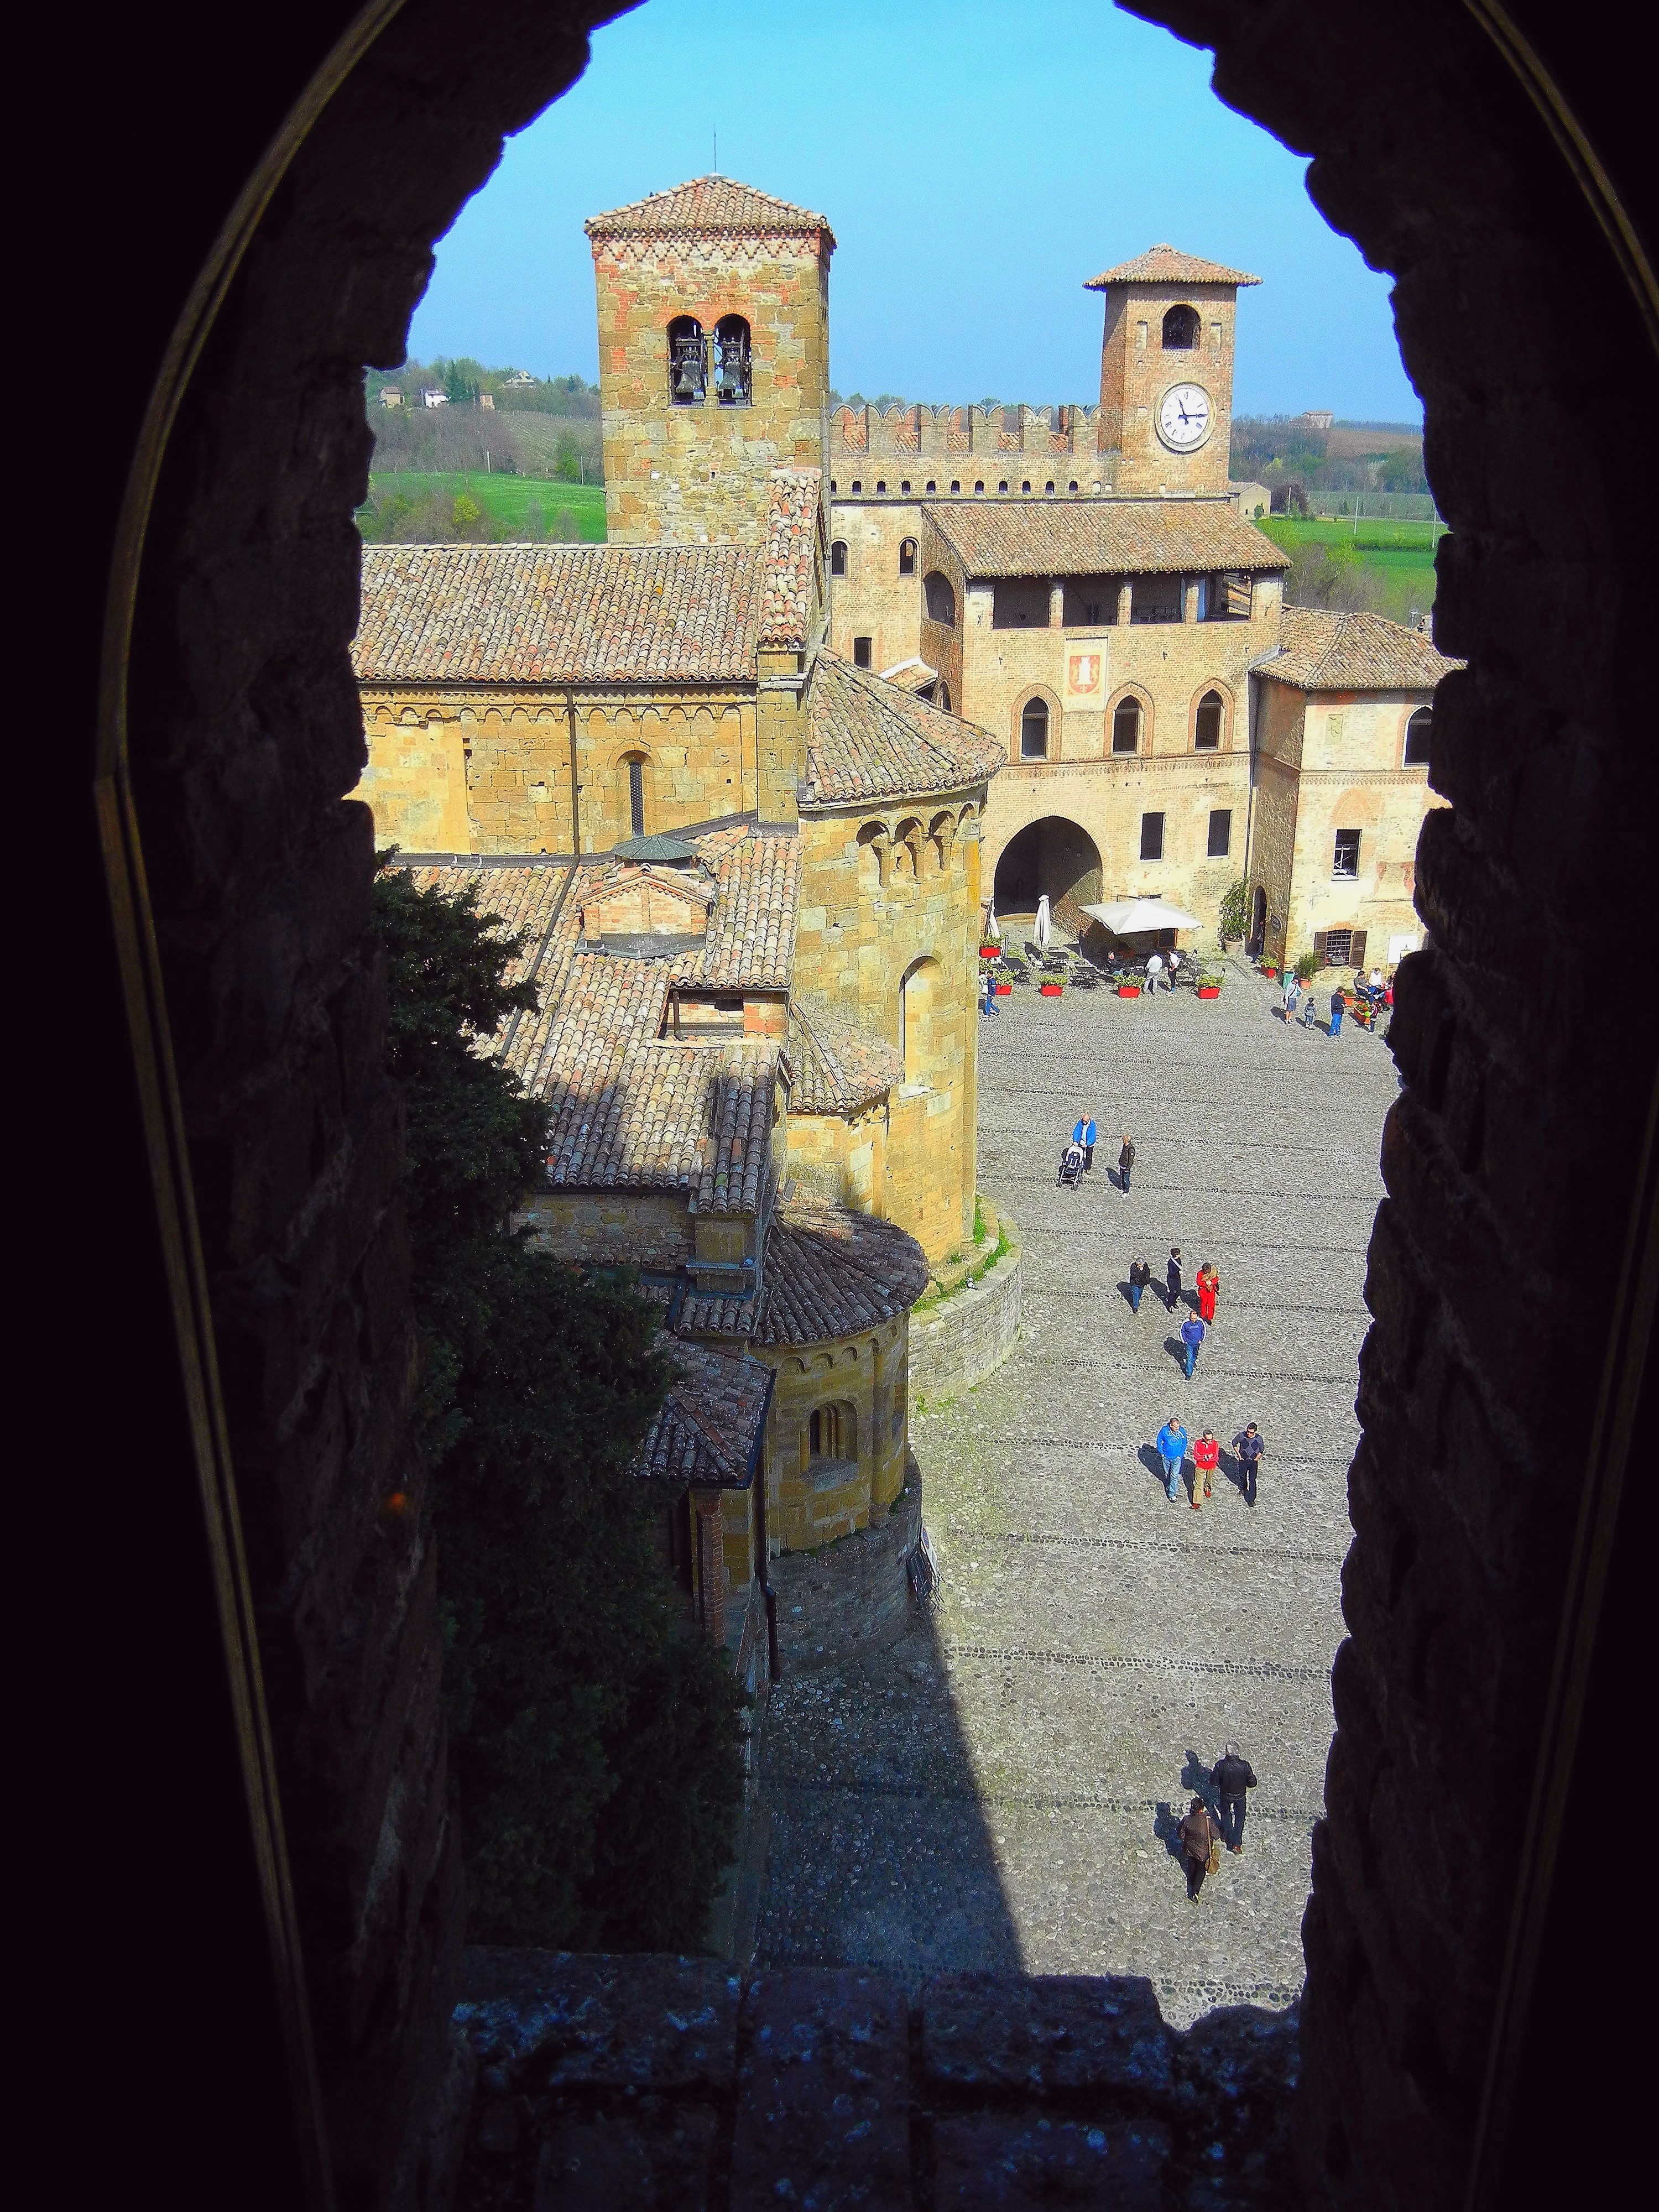 photo: https://upload.wikimedia.org/wikipedia/commons/4/4a/Cutigliano-castell%27arquato-salsomaggiore_aprile_2012_974.jpg